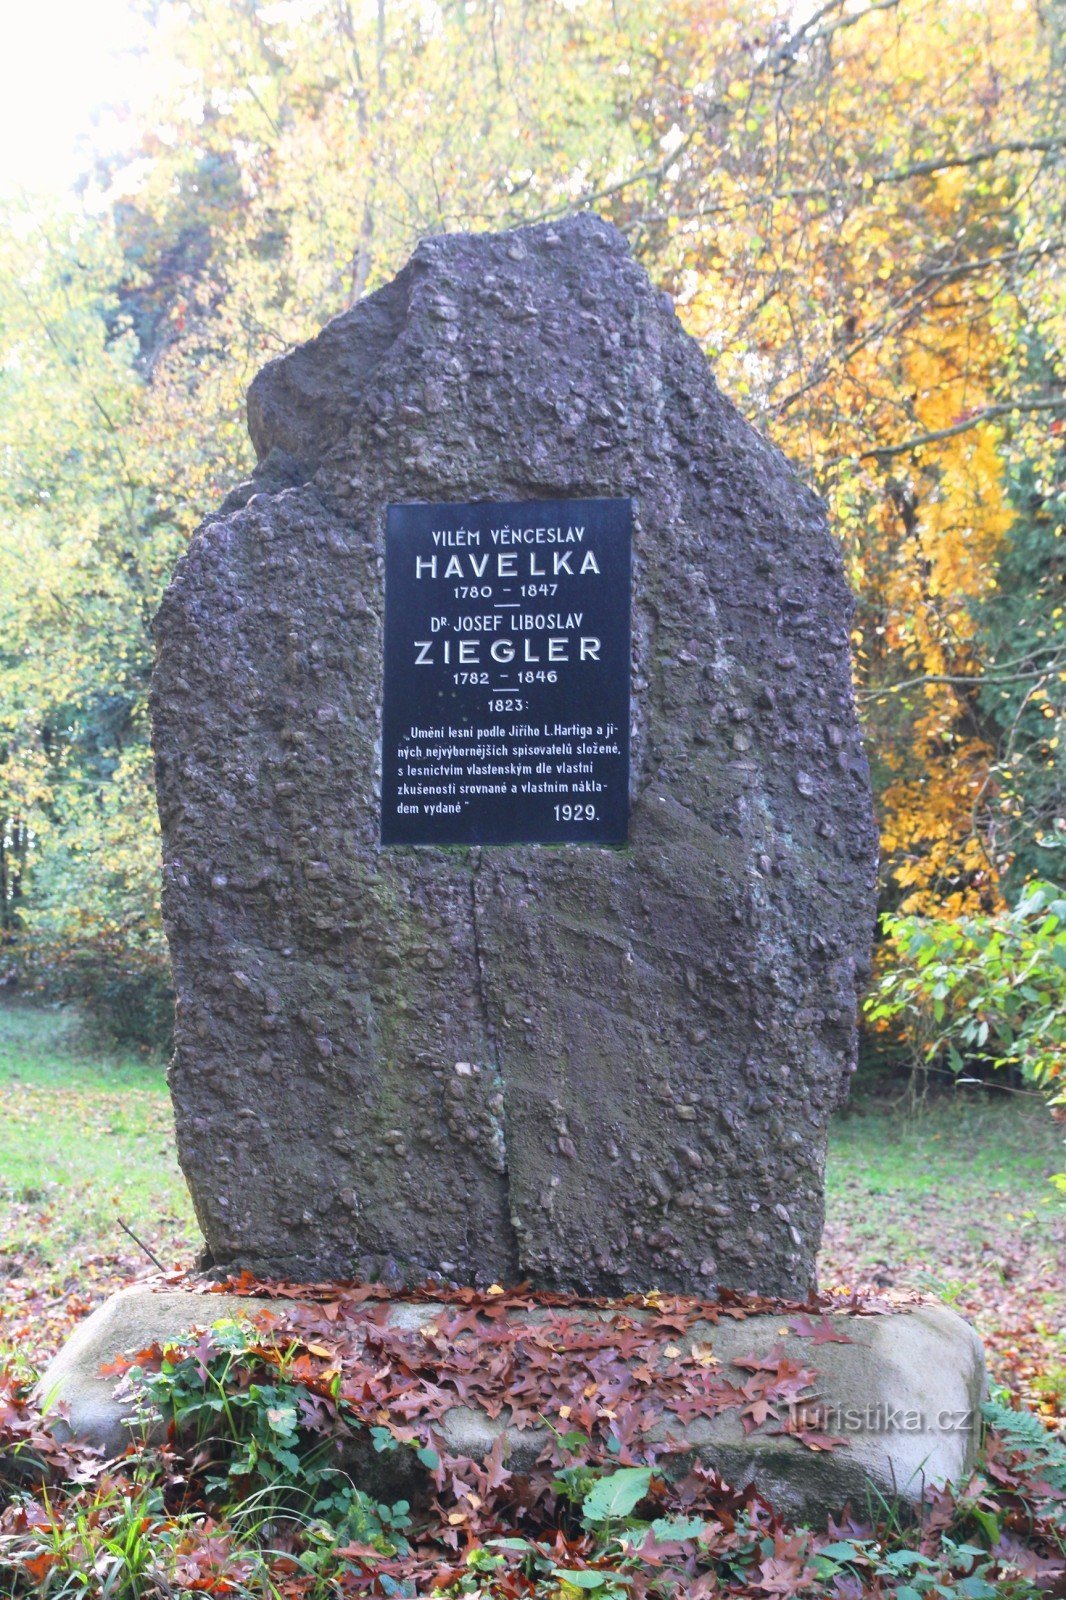 Памятник В.В. Гавелке и Ю.Л. Циглеру